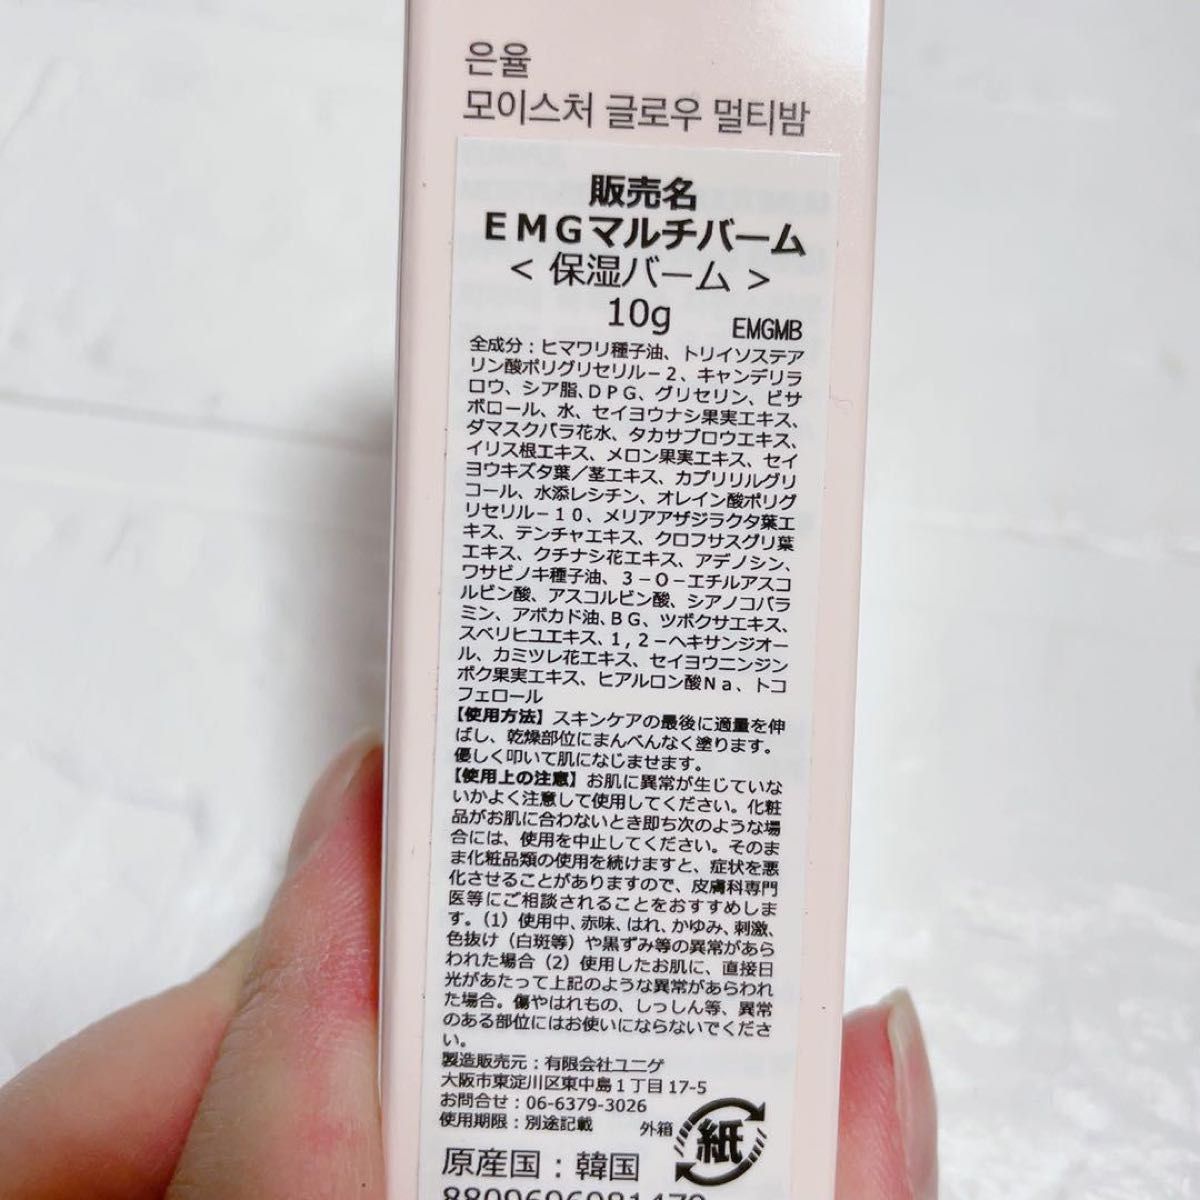 【EUNYUL】ウンユルモイスチャーグローマルチバーム スティックタイプ 10g 韓国コスメ 塗るビタミン